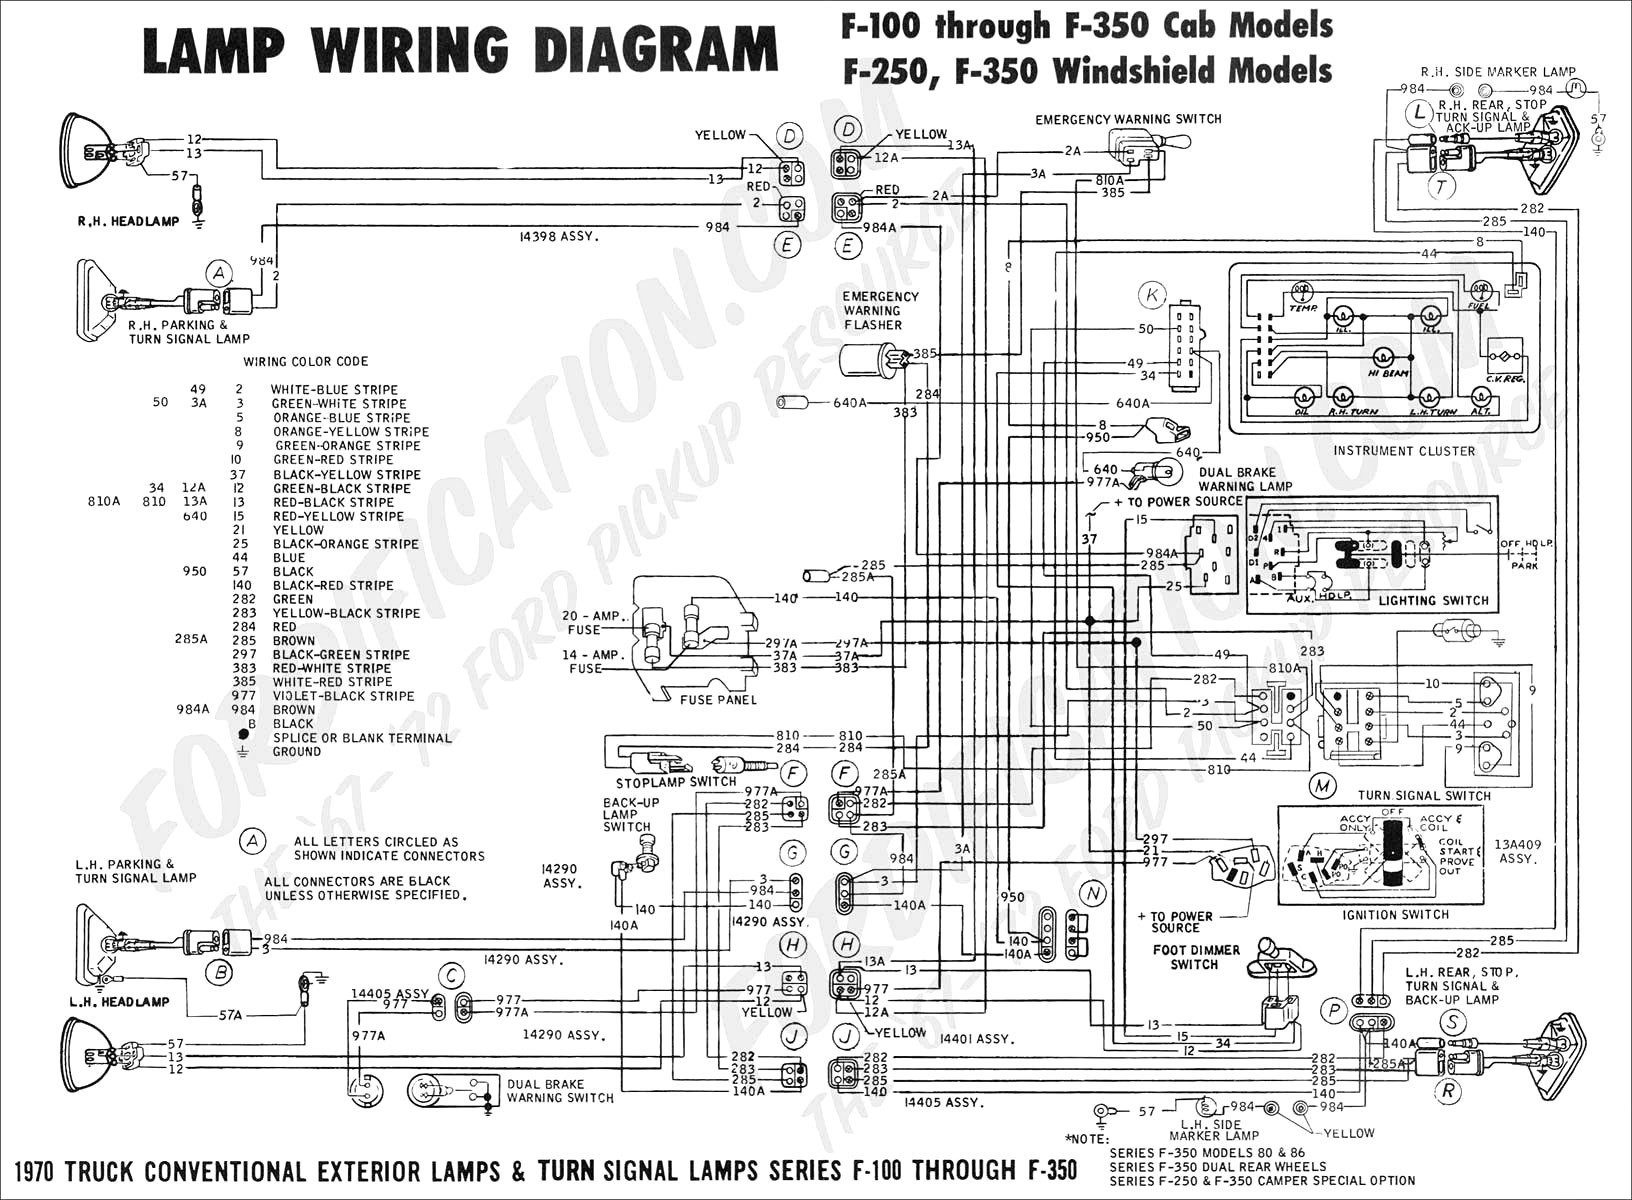 Viper 3305v Wiring Diagram 276 3 Wire Delco Alternator Wiring Diagram Derek Blog Of Viper 3305v Wiring Diagram